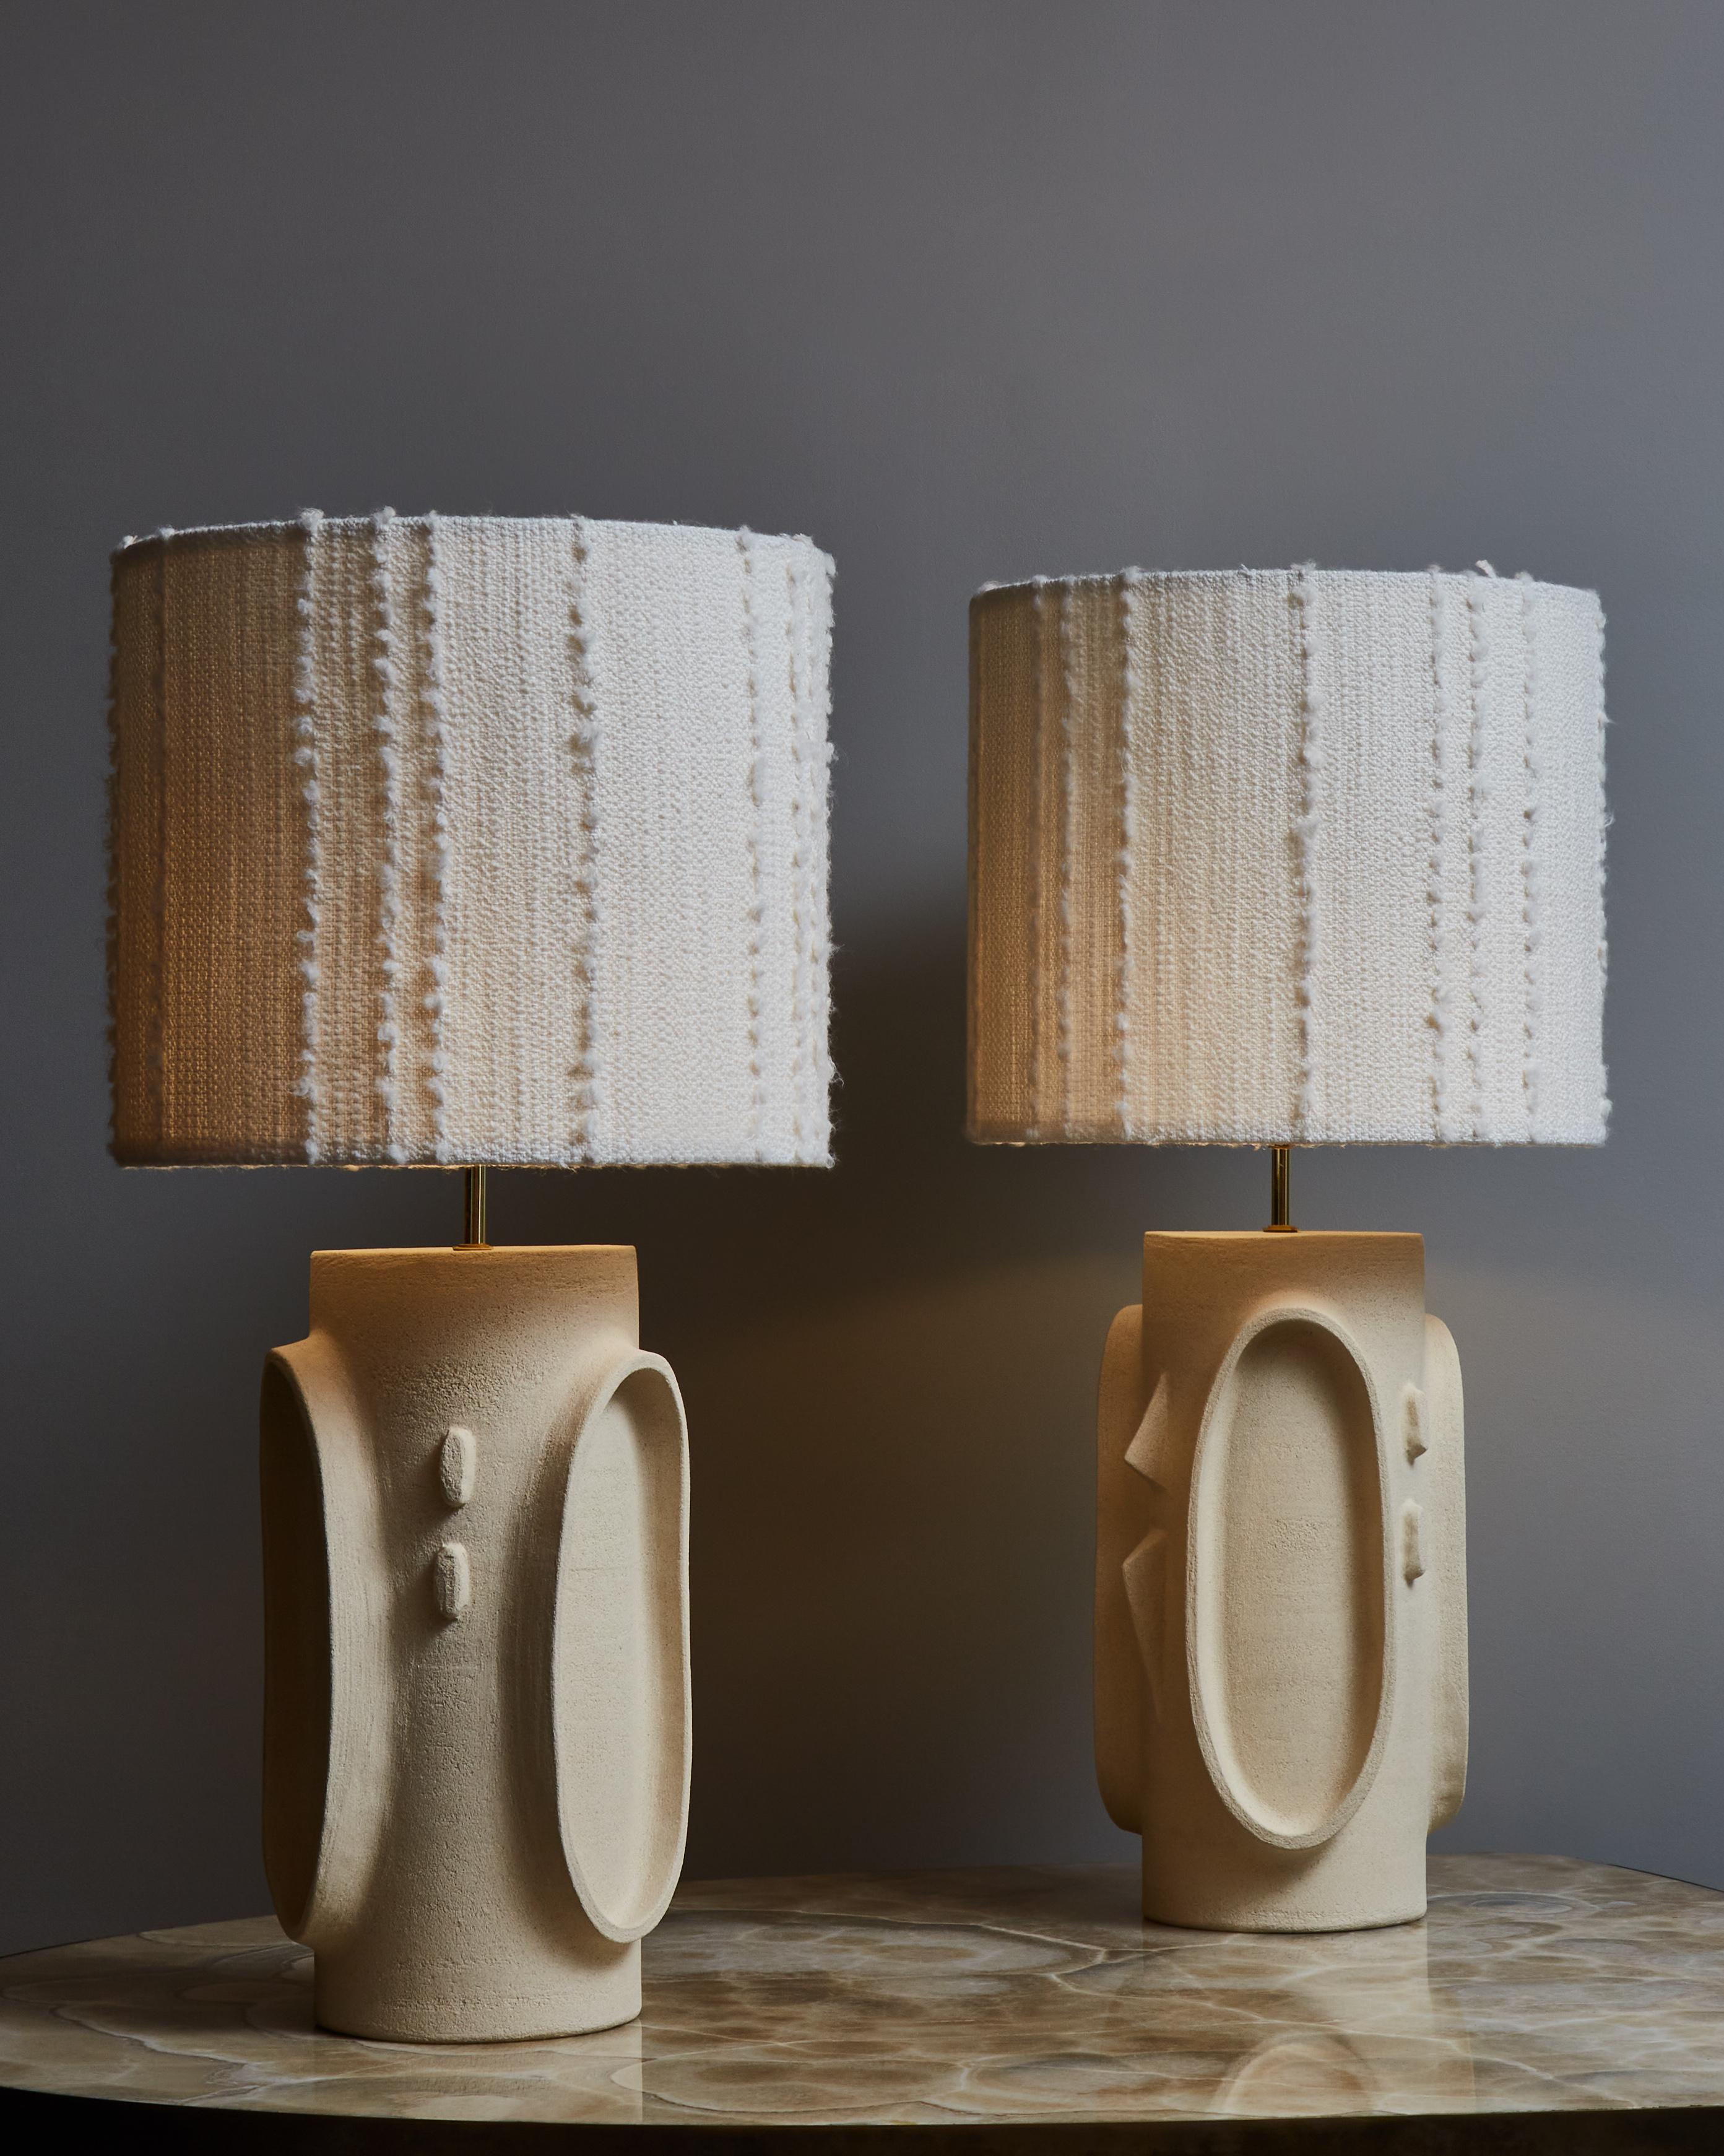 Zwei hohe und elegante Tischlampen aus Keramik der französischen Künstlerin Olivia Cognet, mit Lampenschirmen aus Dedar Milano-Stoff bestückt.

Seit ihrem Umzug nach Los Angeles im Jahr 2016 hat sich die französische Künstlerin und Designerin Olivia